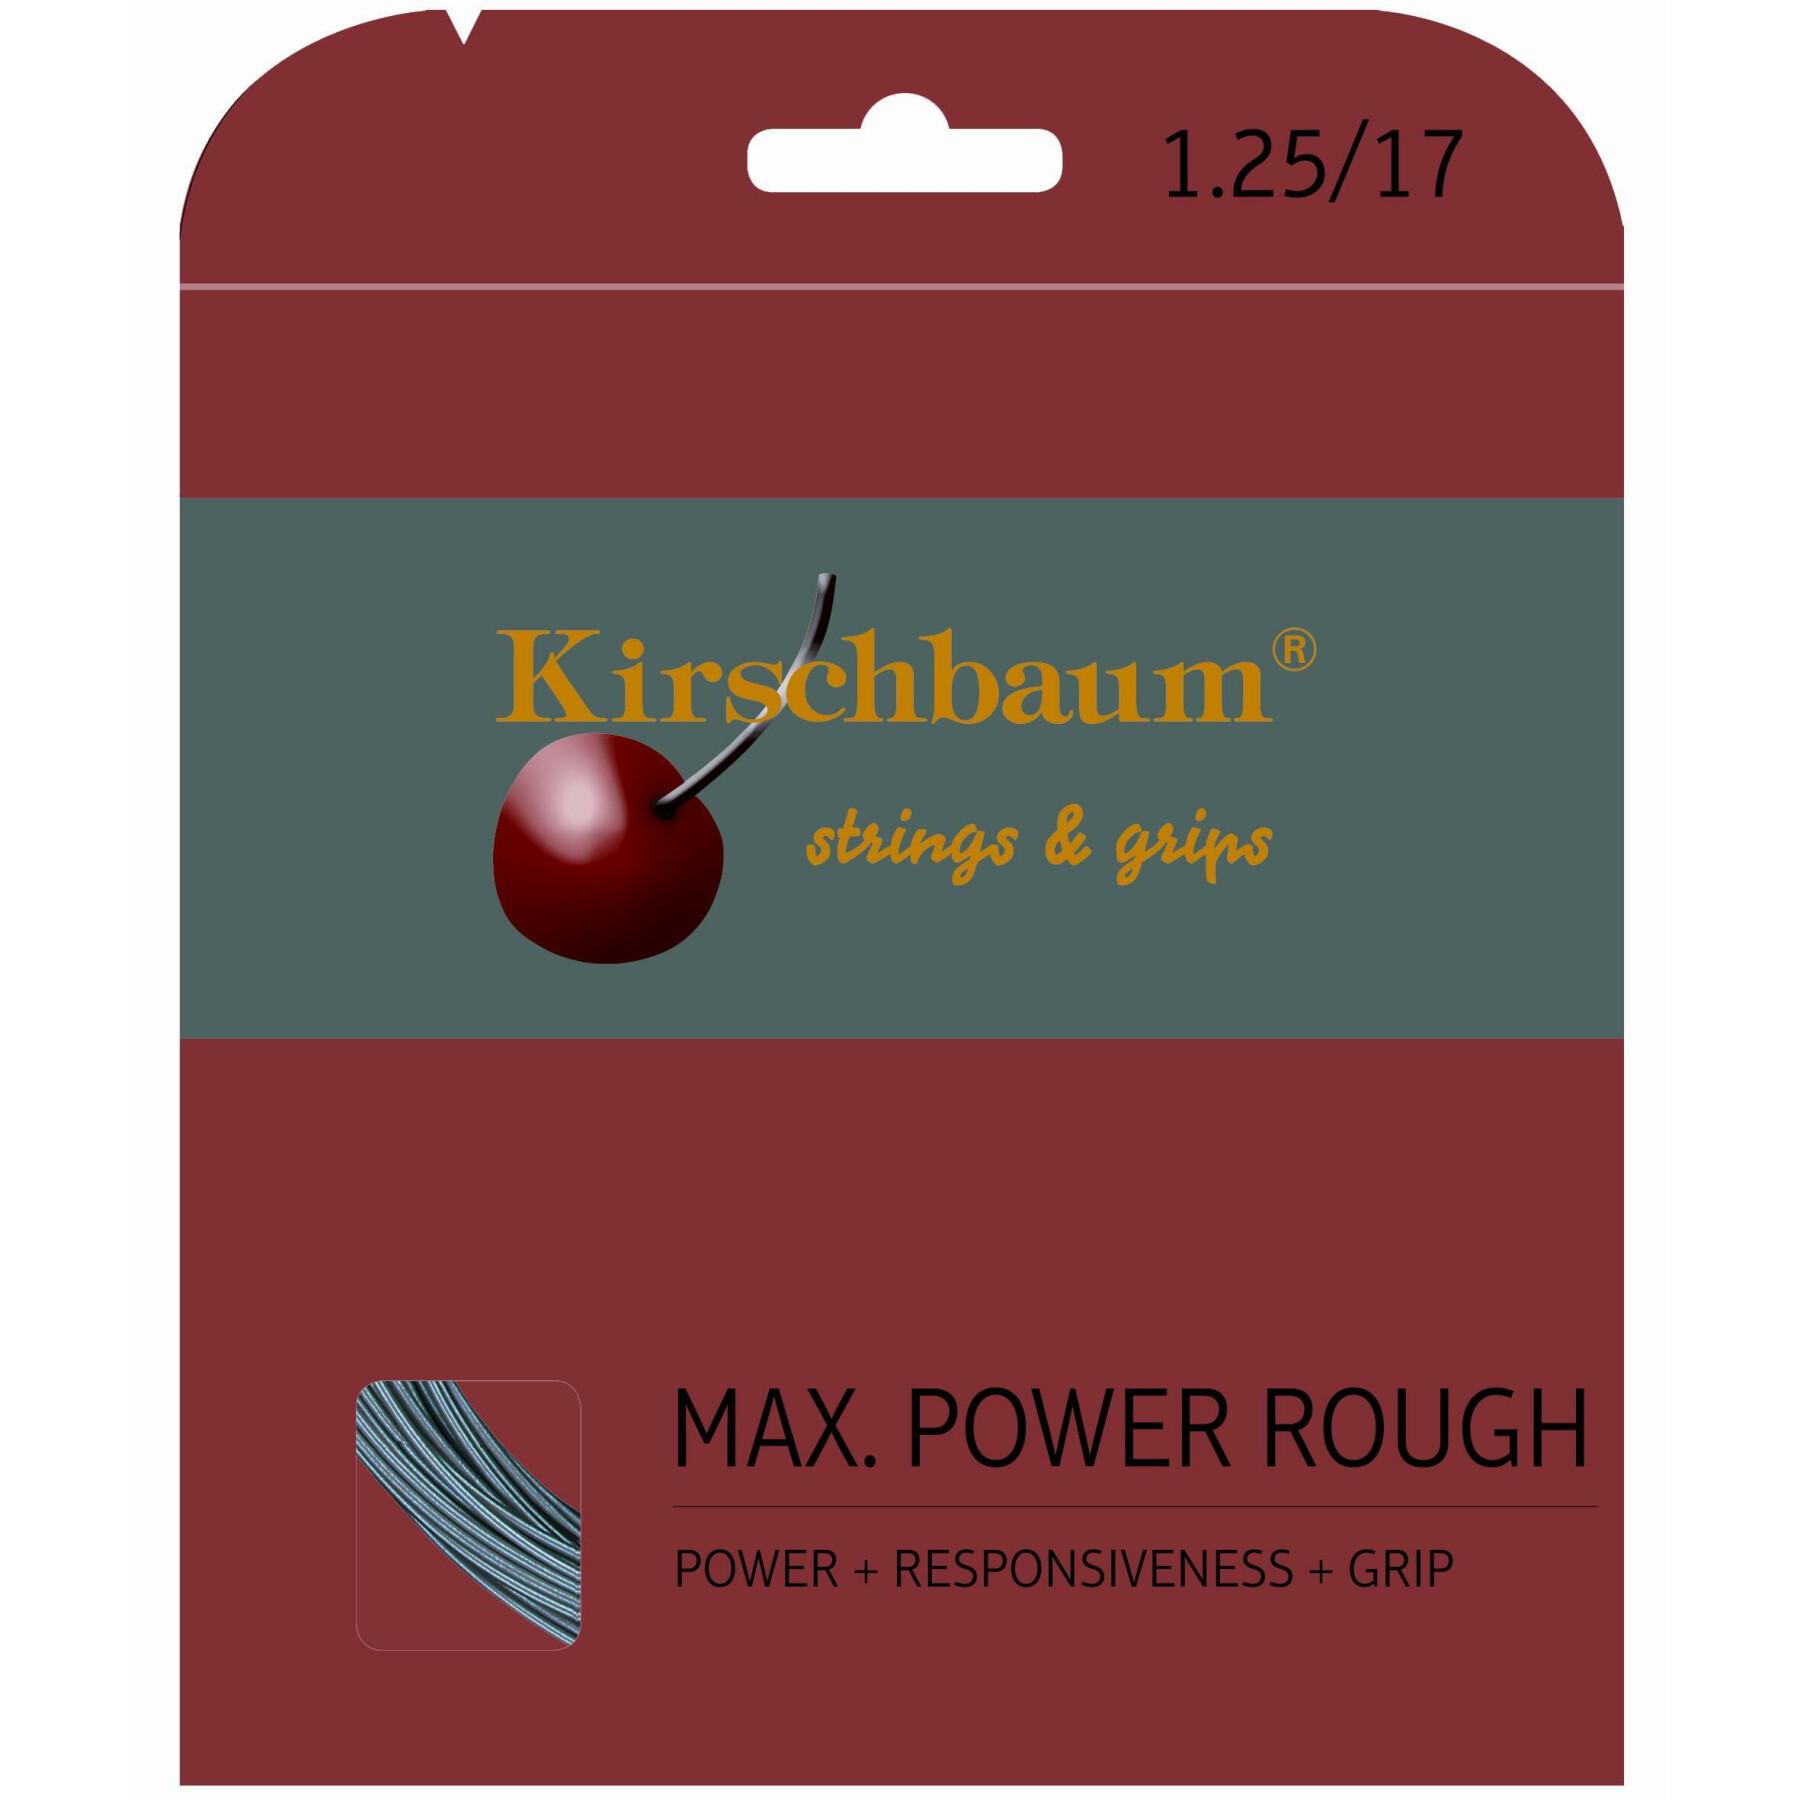 Cordas de ténis Kirschbaum Mmax Power Rough 12 m